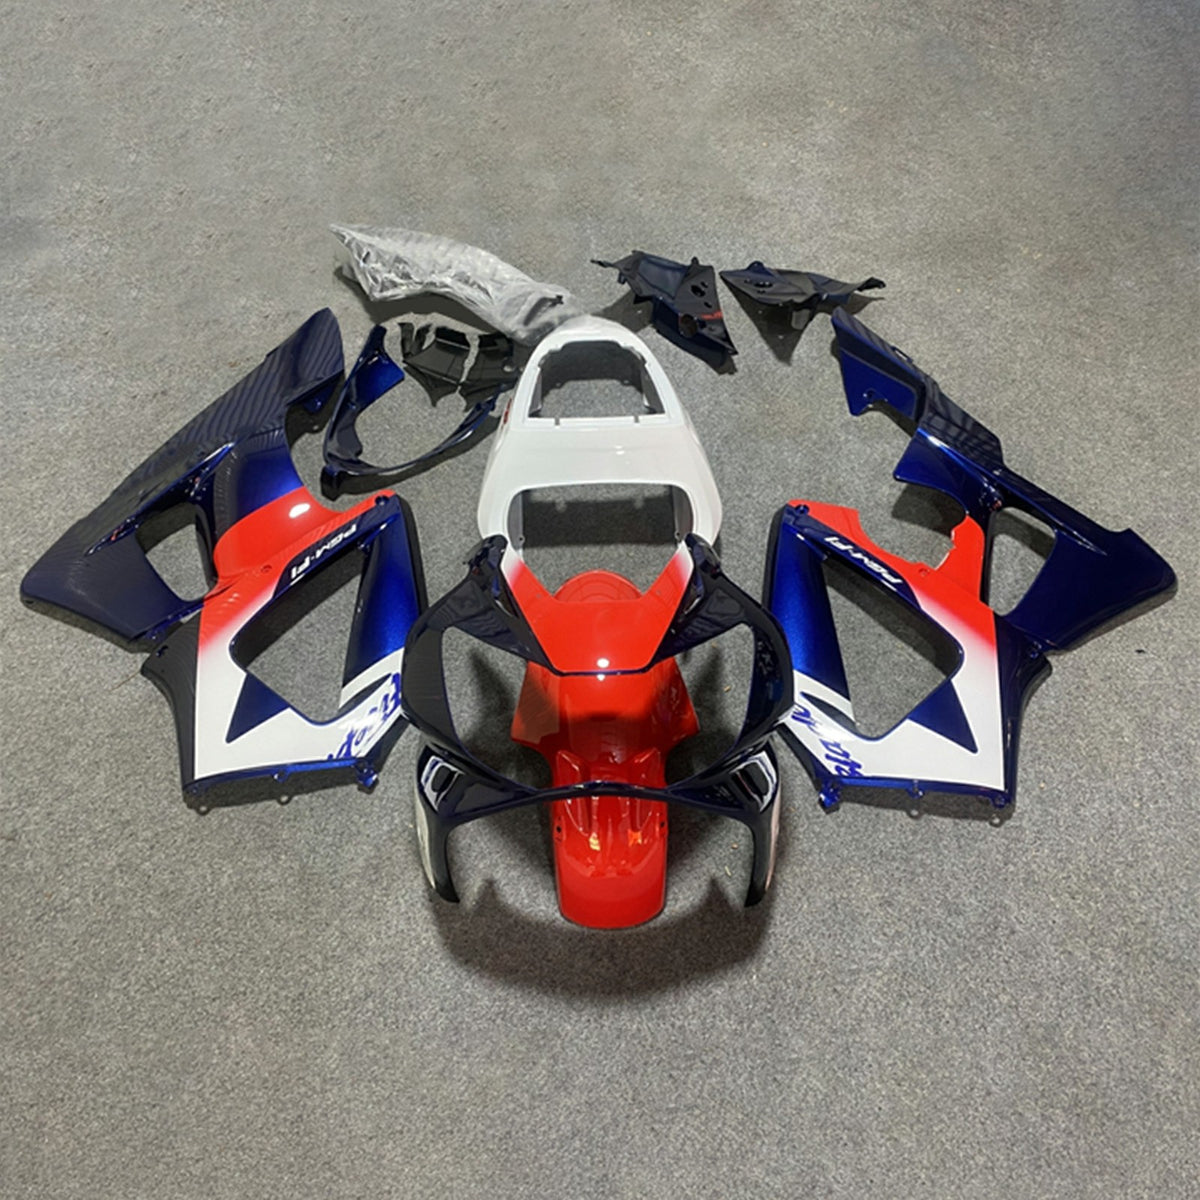 Amotopart 2000-2001 CBR929RR Honda Red&Blue Fairing Kit